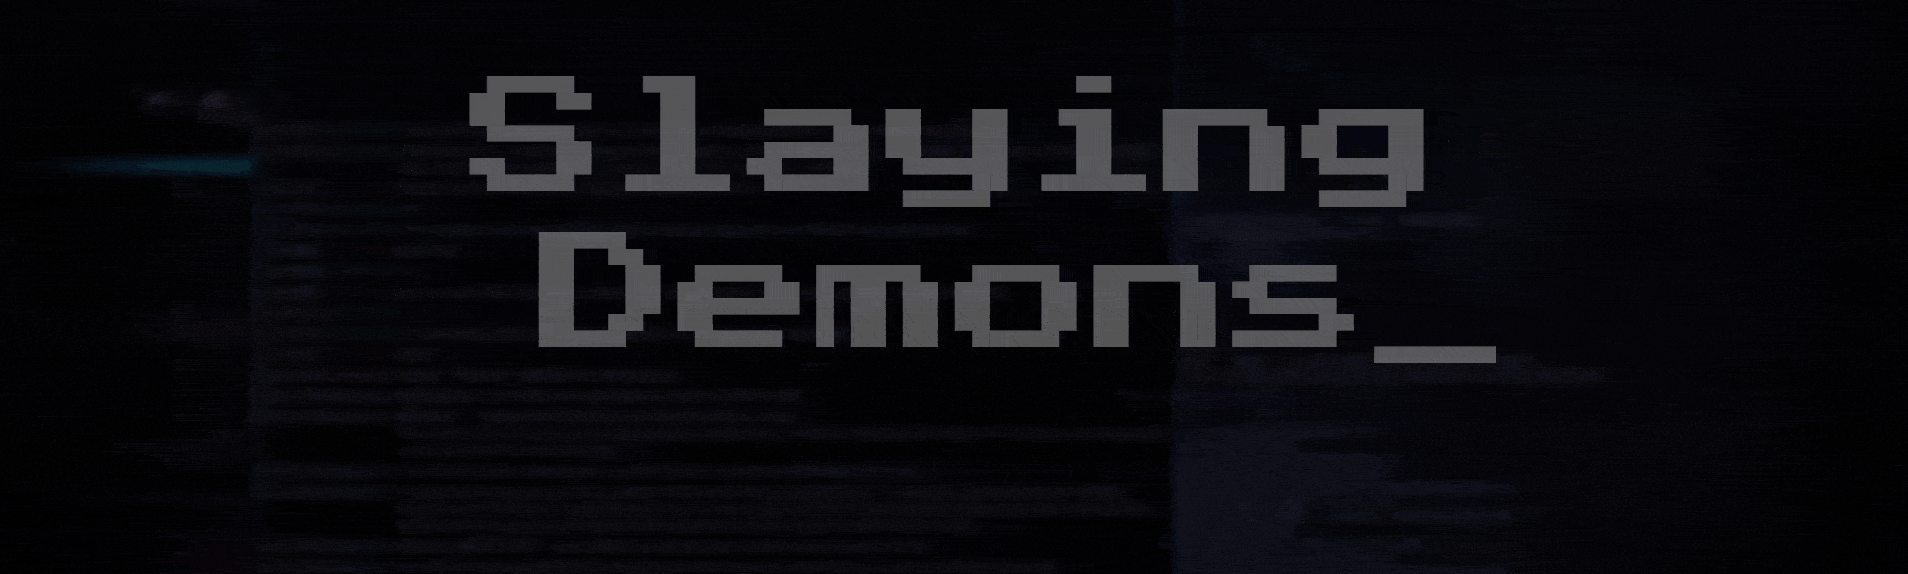 Slaying Demons_